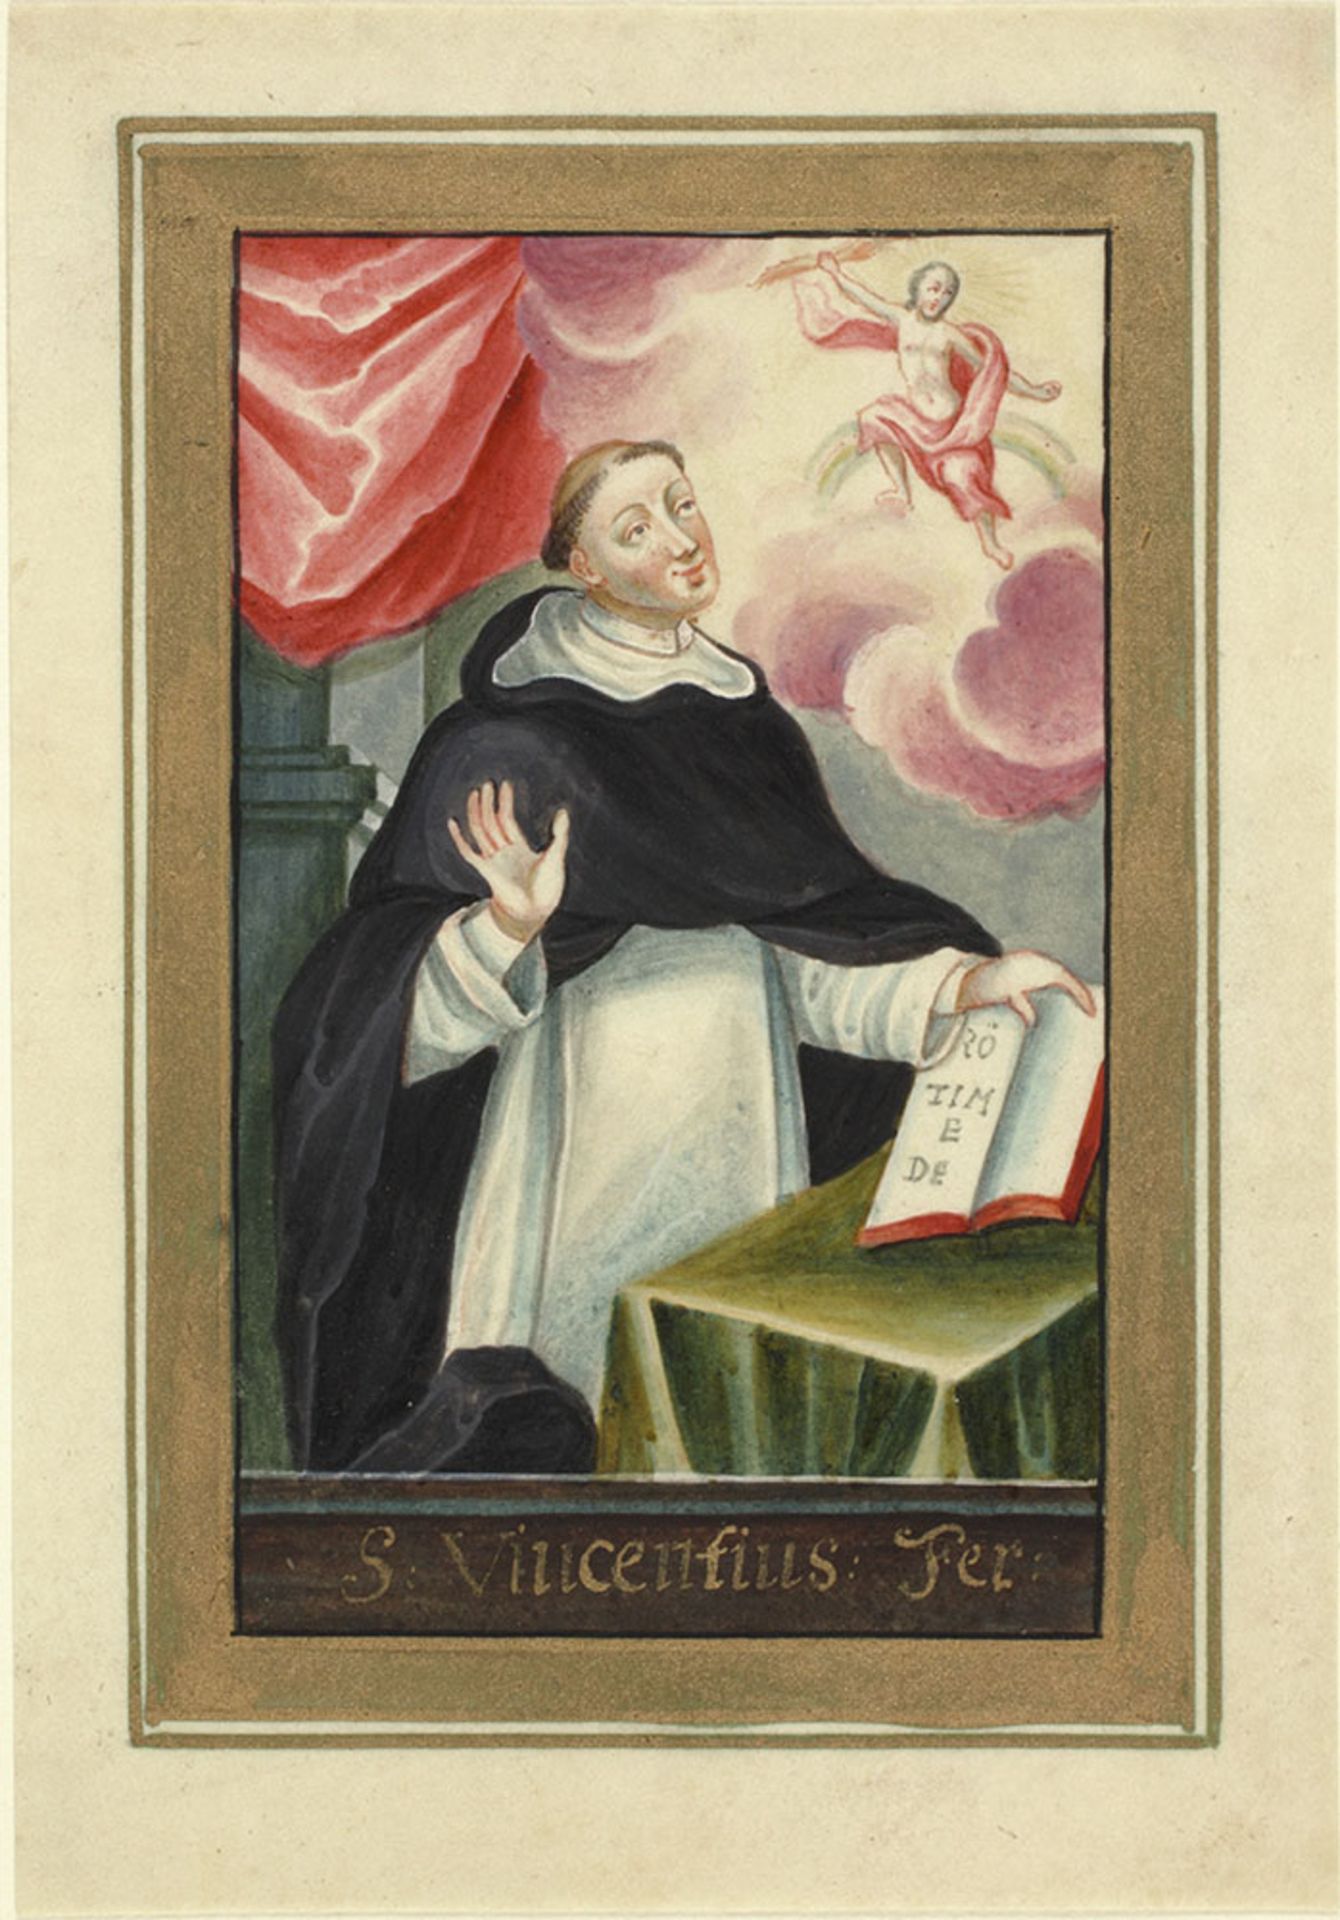 Vincentius Ferrerius.